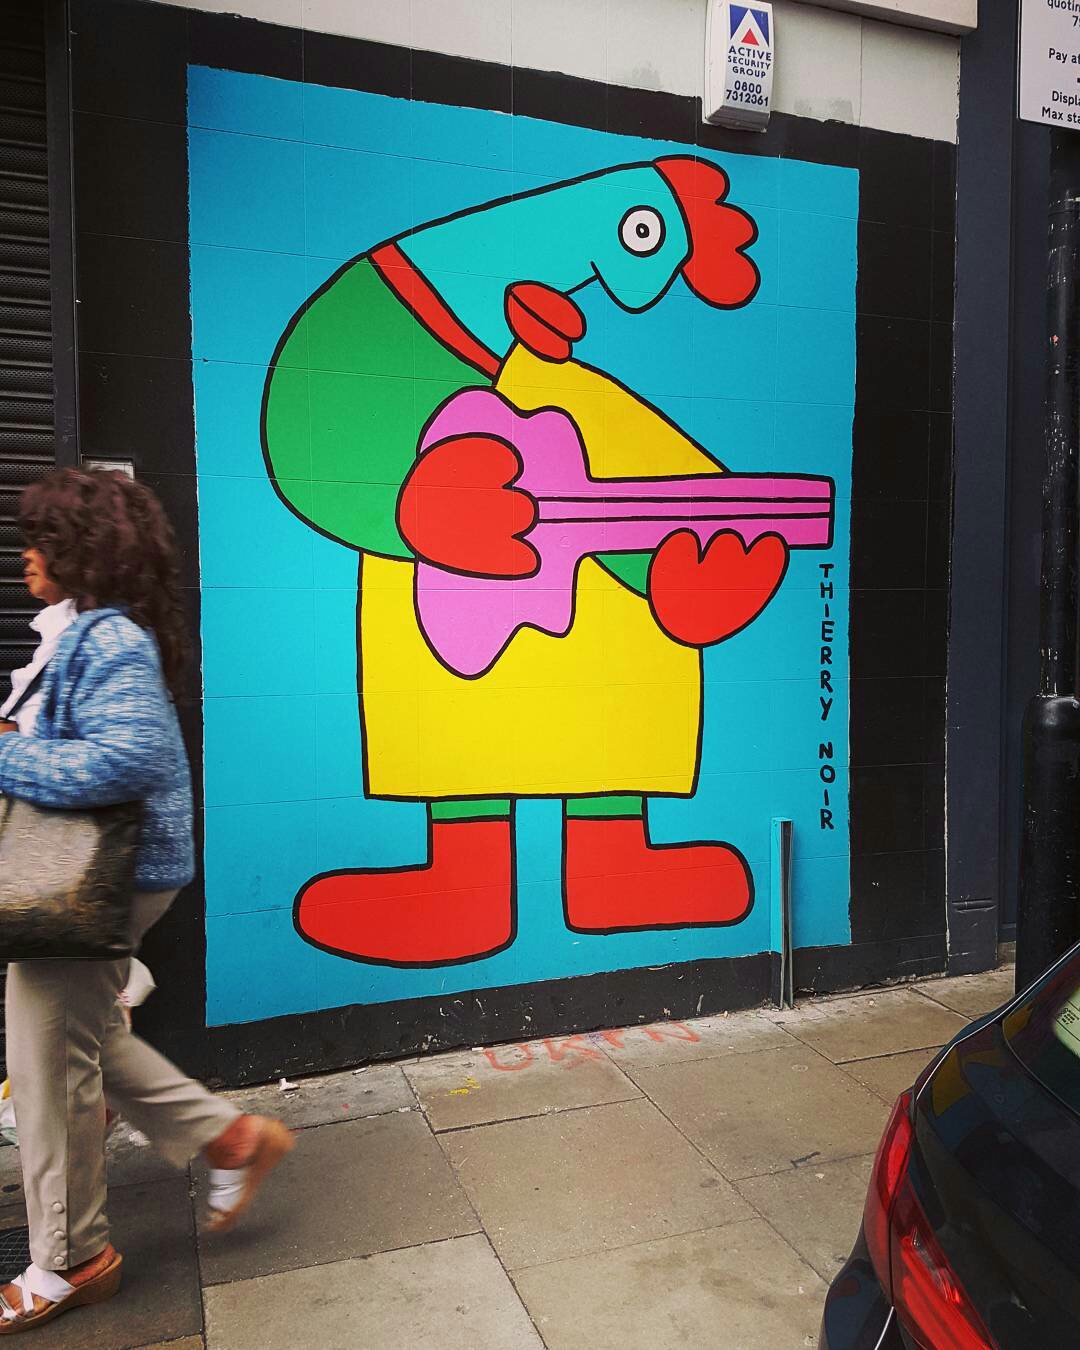 thierry noir - street art - shoreditch - london